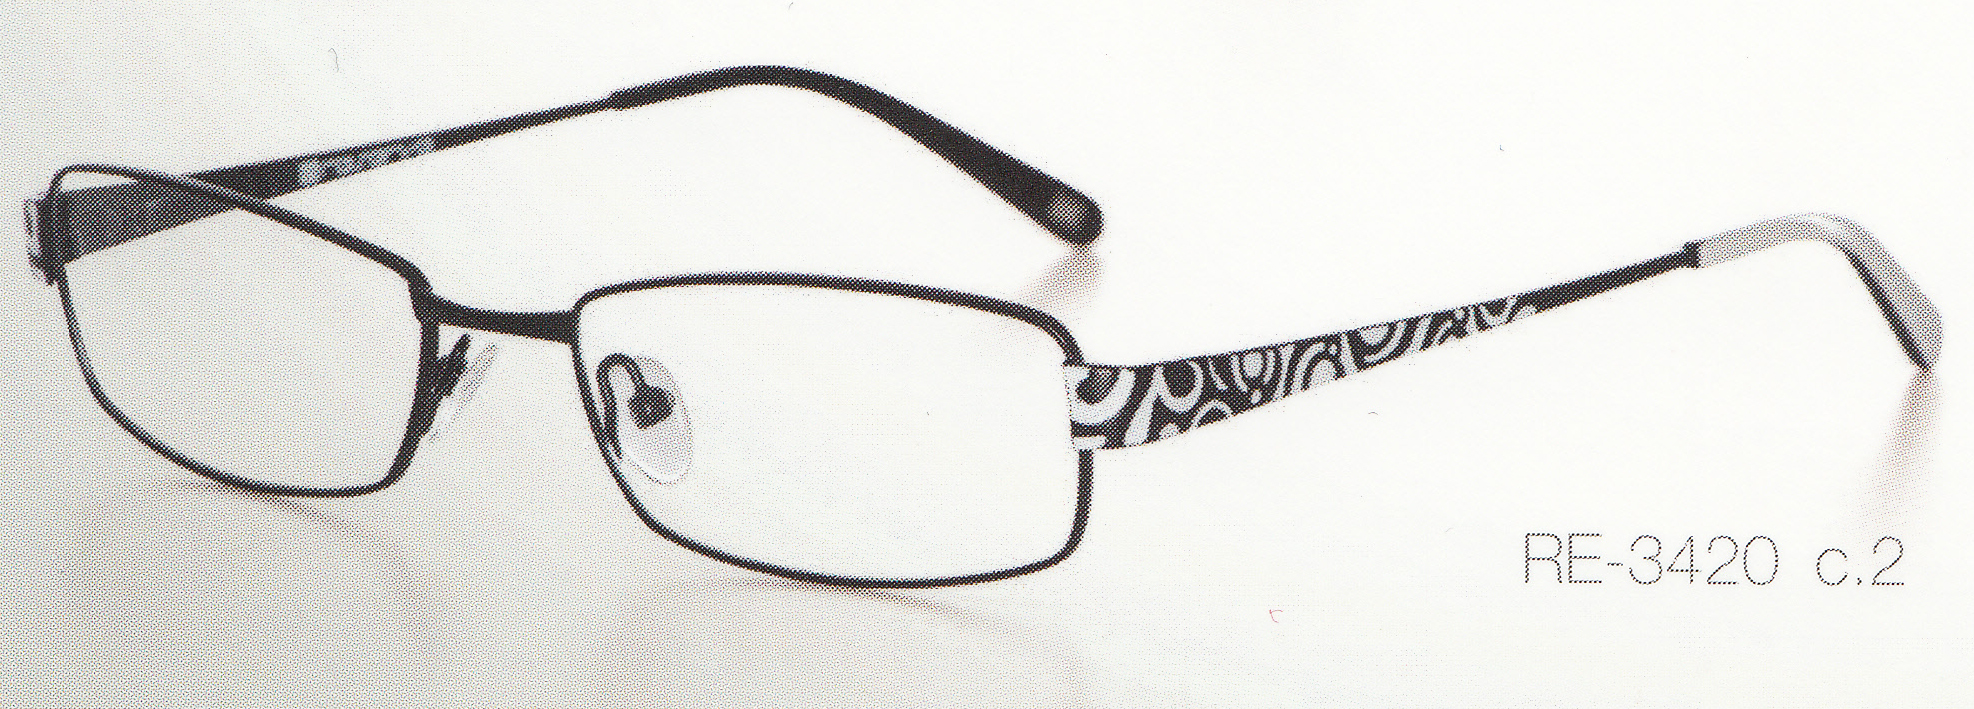 Dioptrické okuliare Reserve 3420 c.2